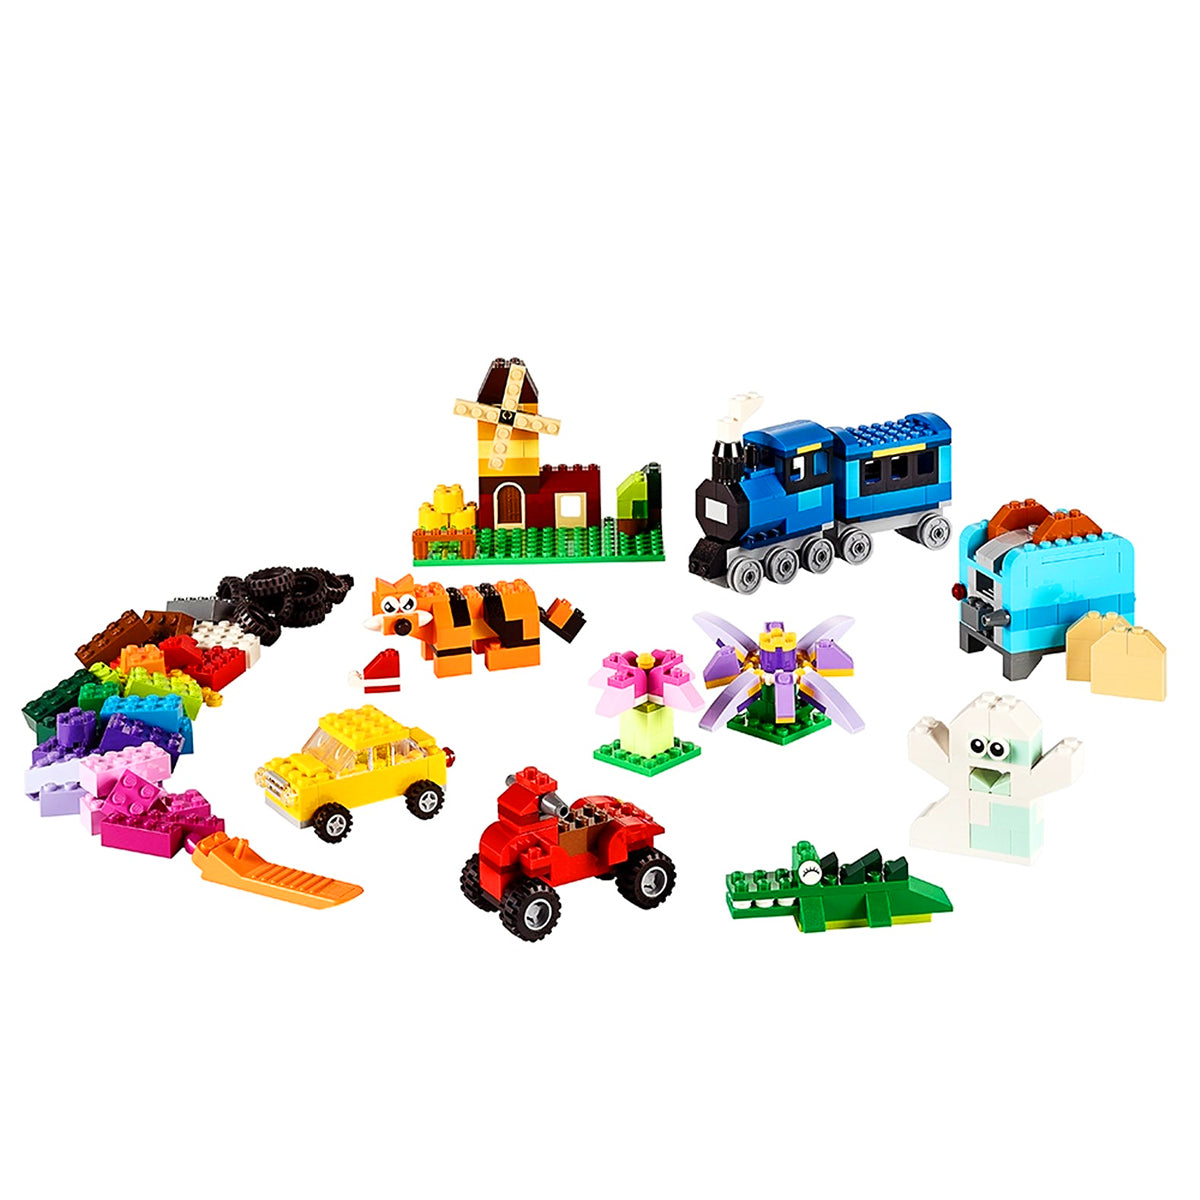 LEGO Classic - Medium Creative Brick Box 10696